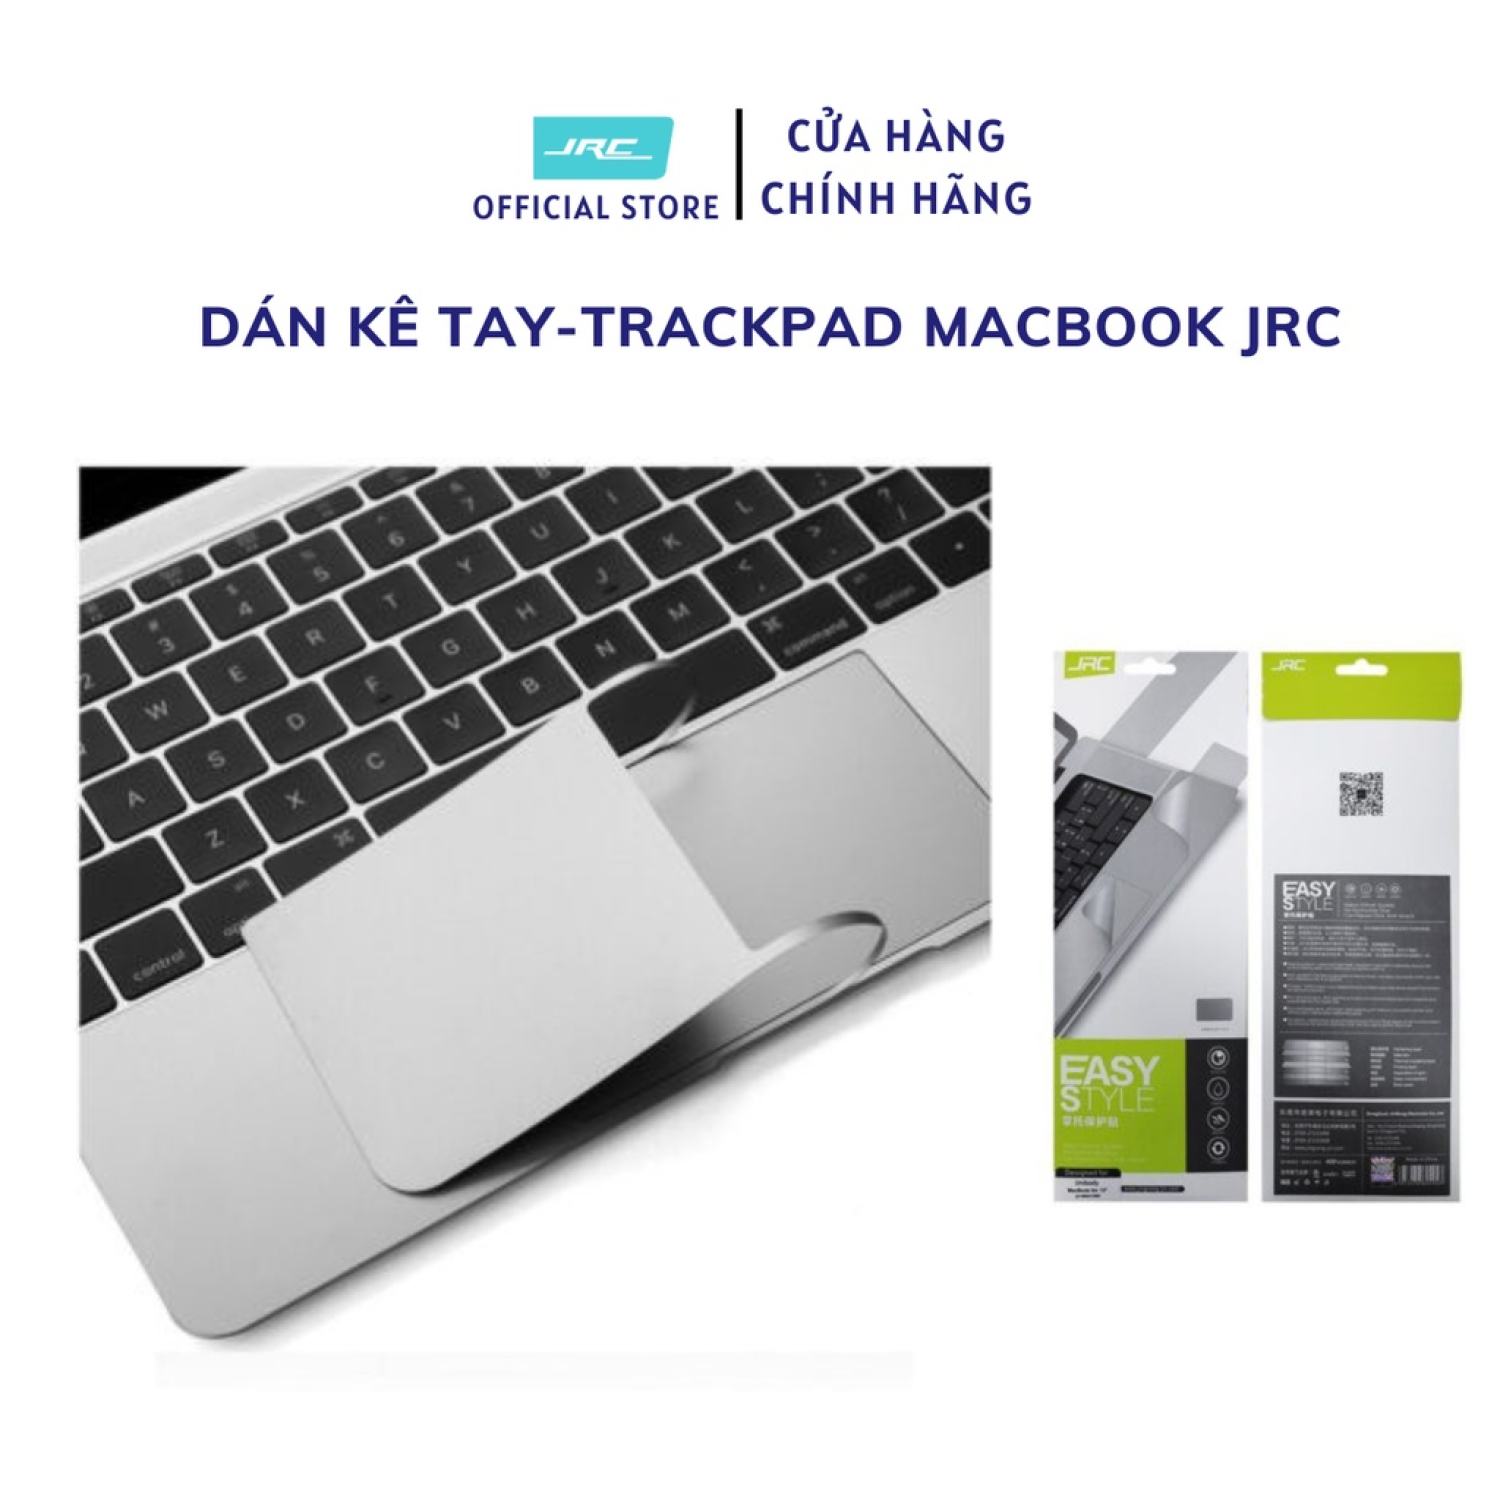 Miếng Dán Kê Tay Và Trackpad Cho Macbook JRC. Dán 3M không dính keo, độ bền cao